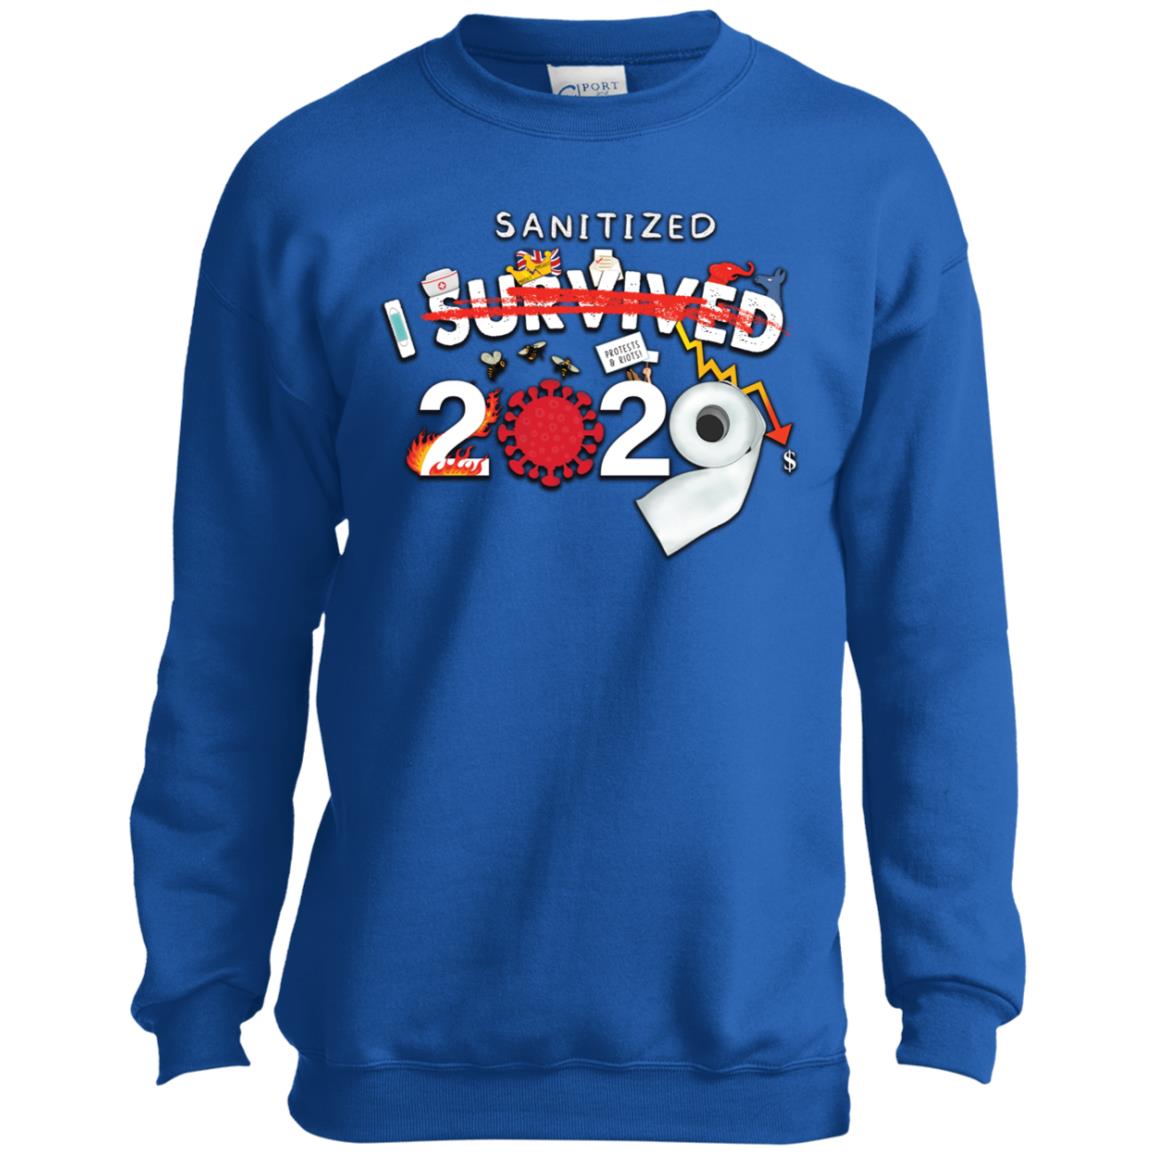 I Sanitized 2020 - Youth Crewneck Sweatshirt